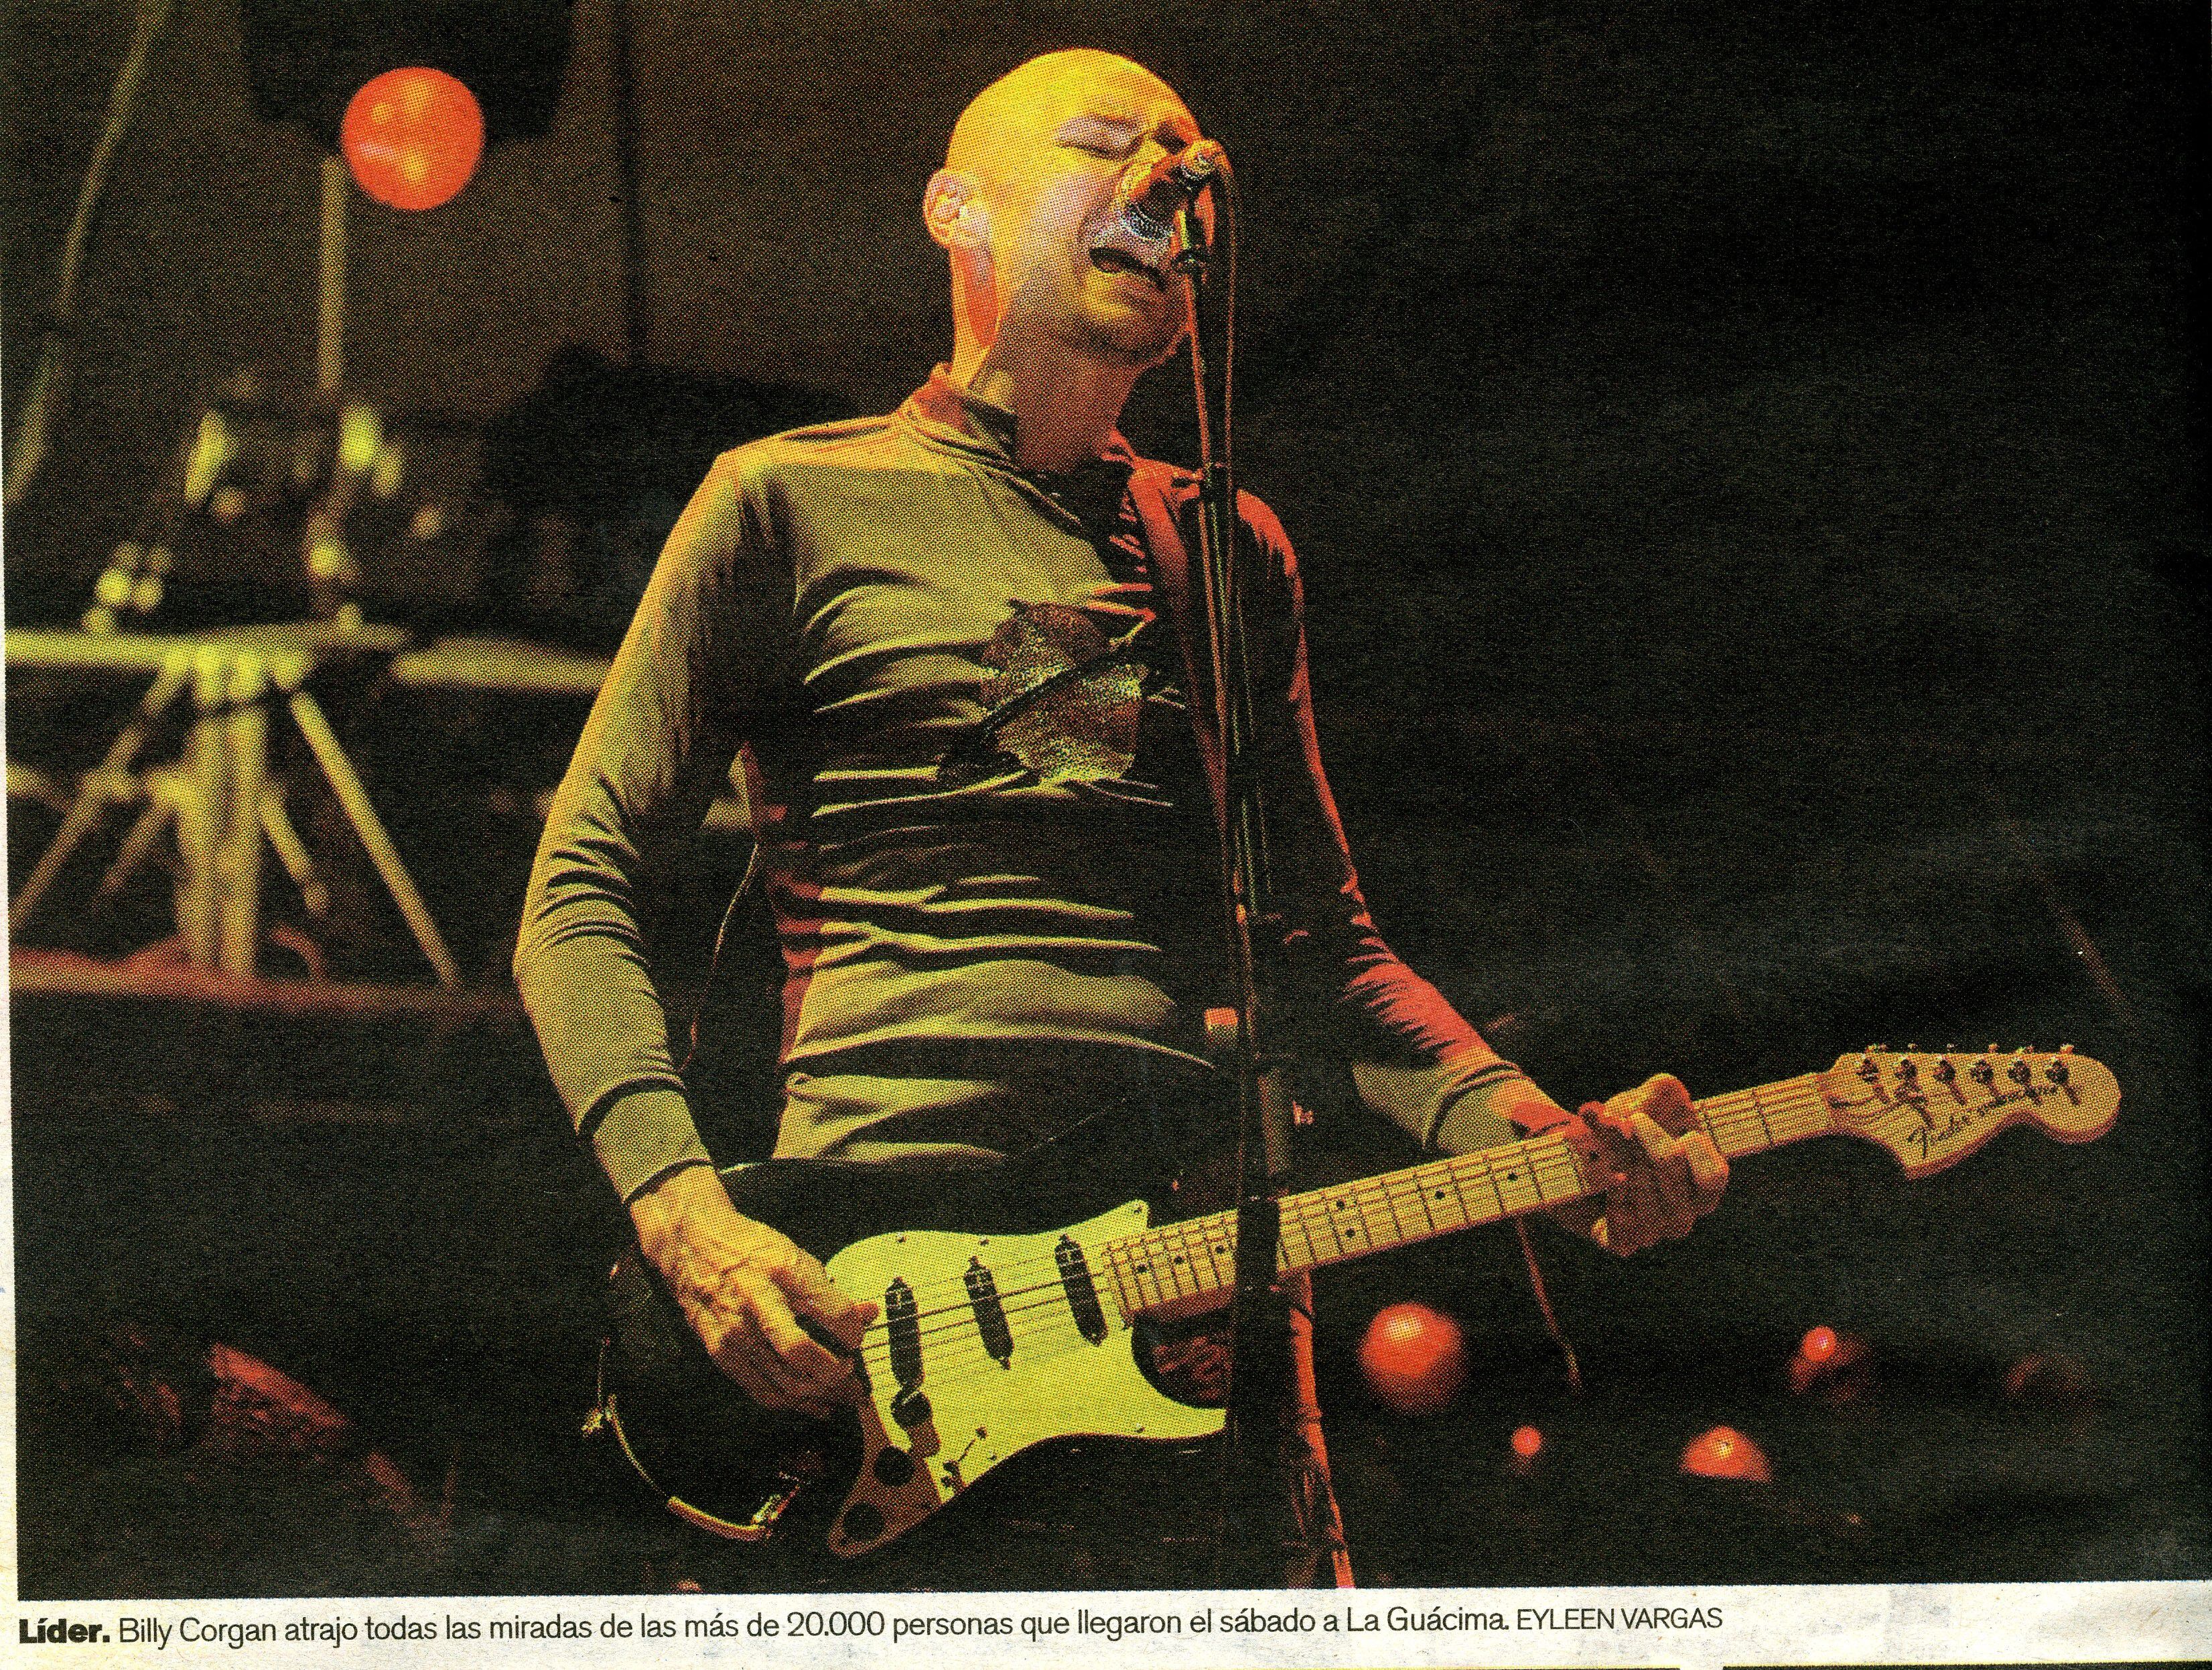 La fotógrafa Eyleen Vargas capturó uno de los momentos en que Billy Corgan cantaba y tocaba su guitarra en el concierto de Smashing Pumpkins en Costa Rica, en el 2008.